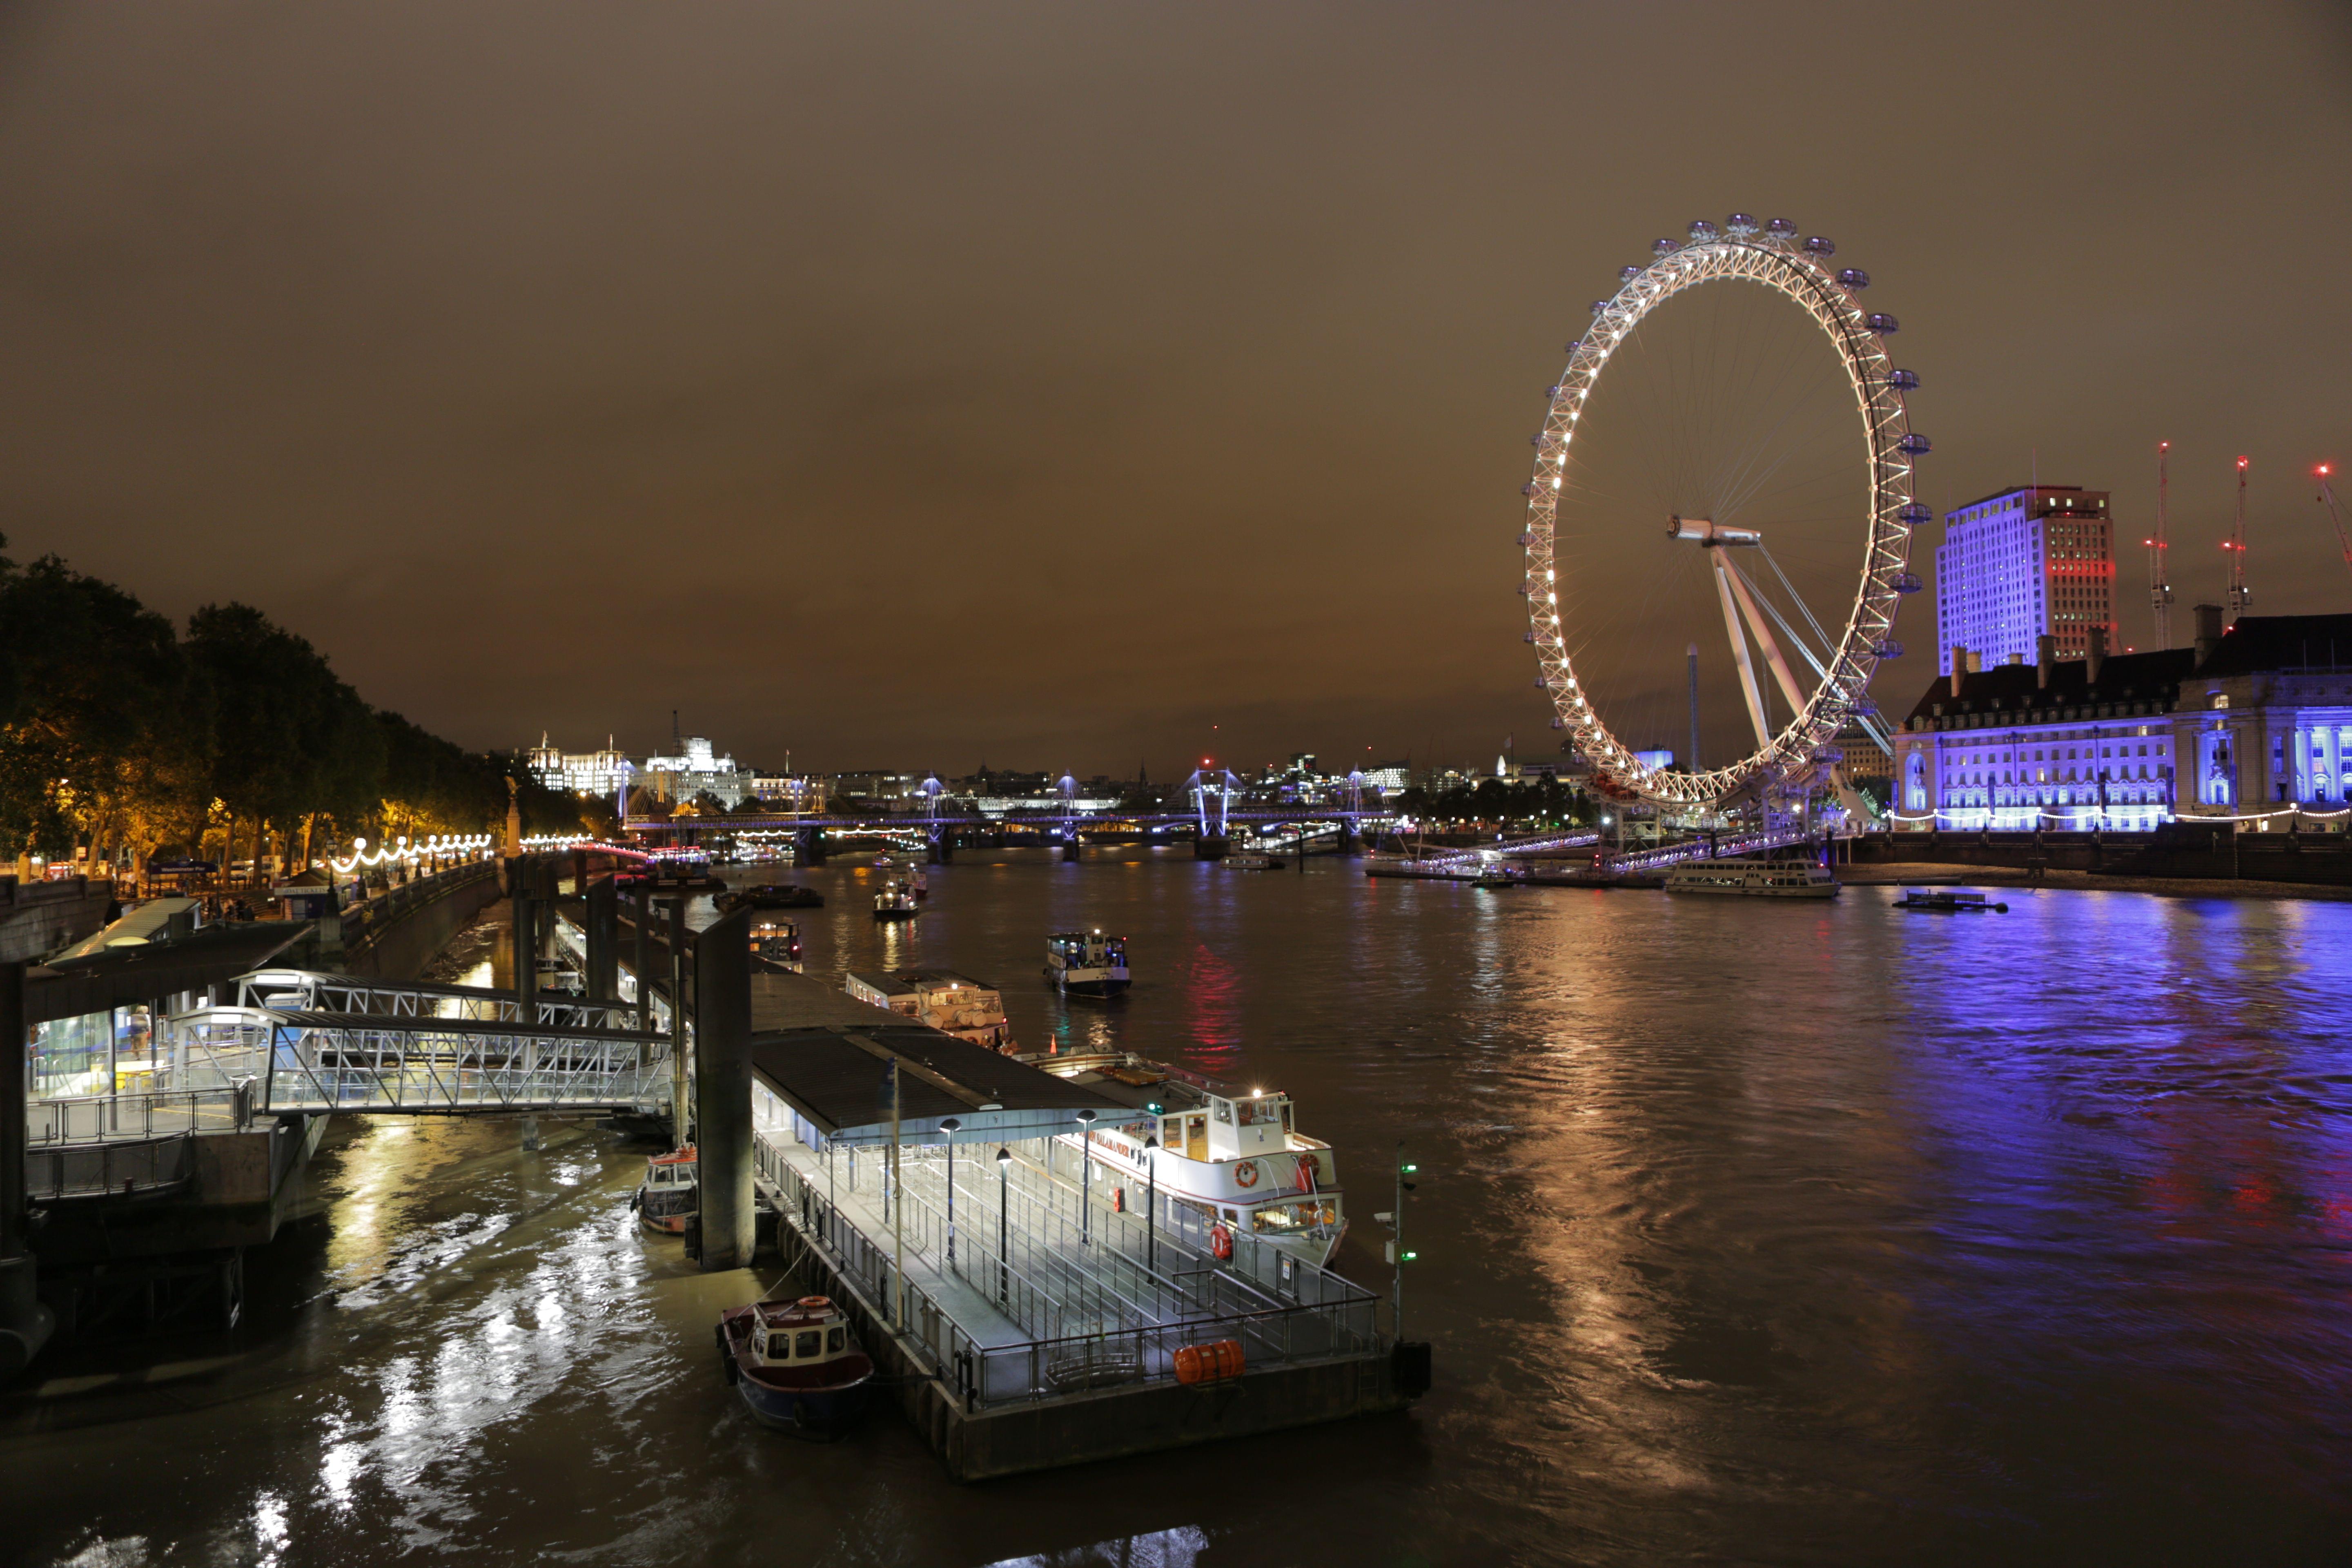 London River Dinner Cruise